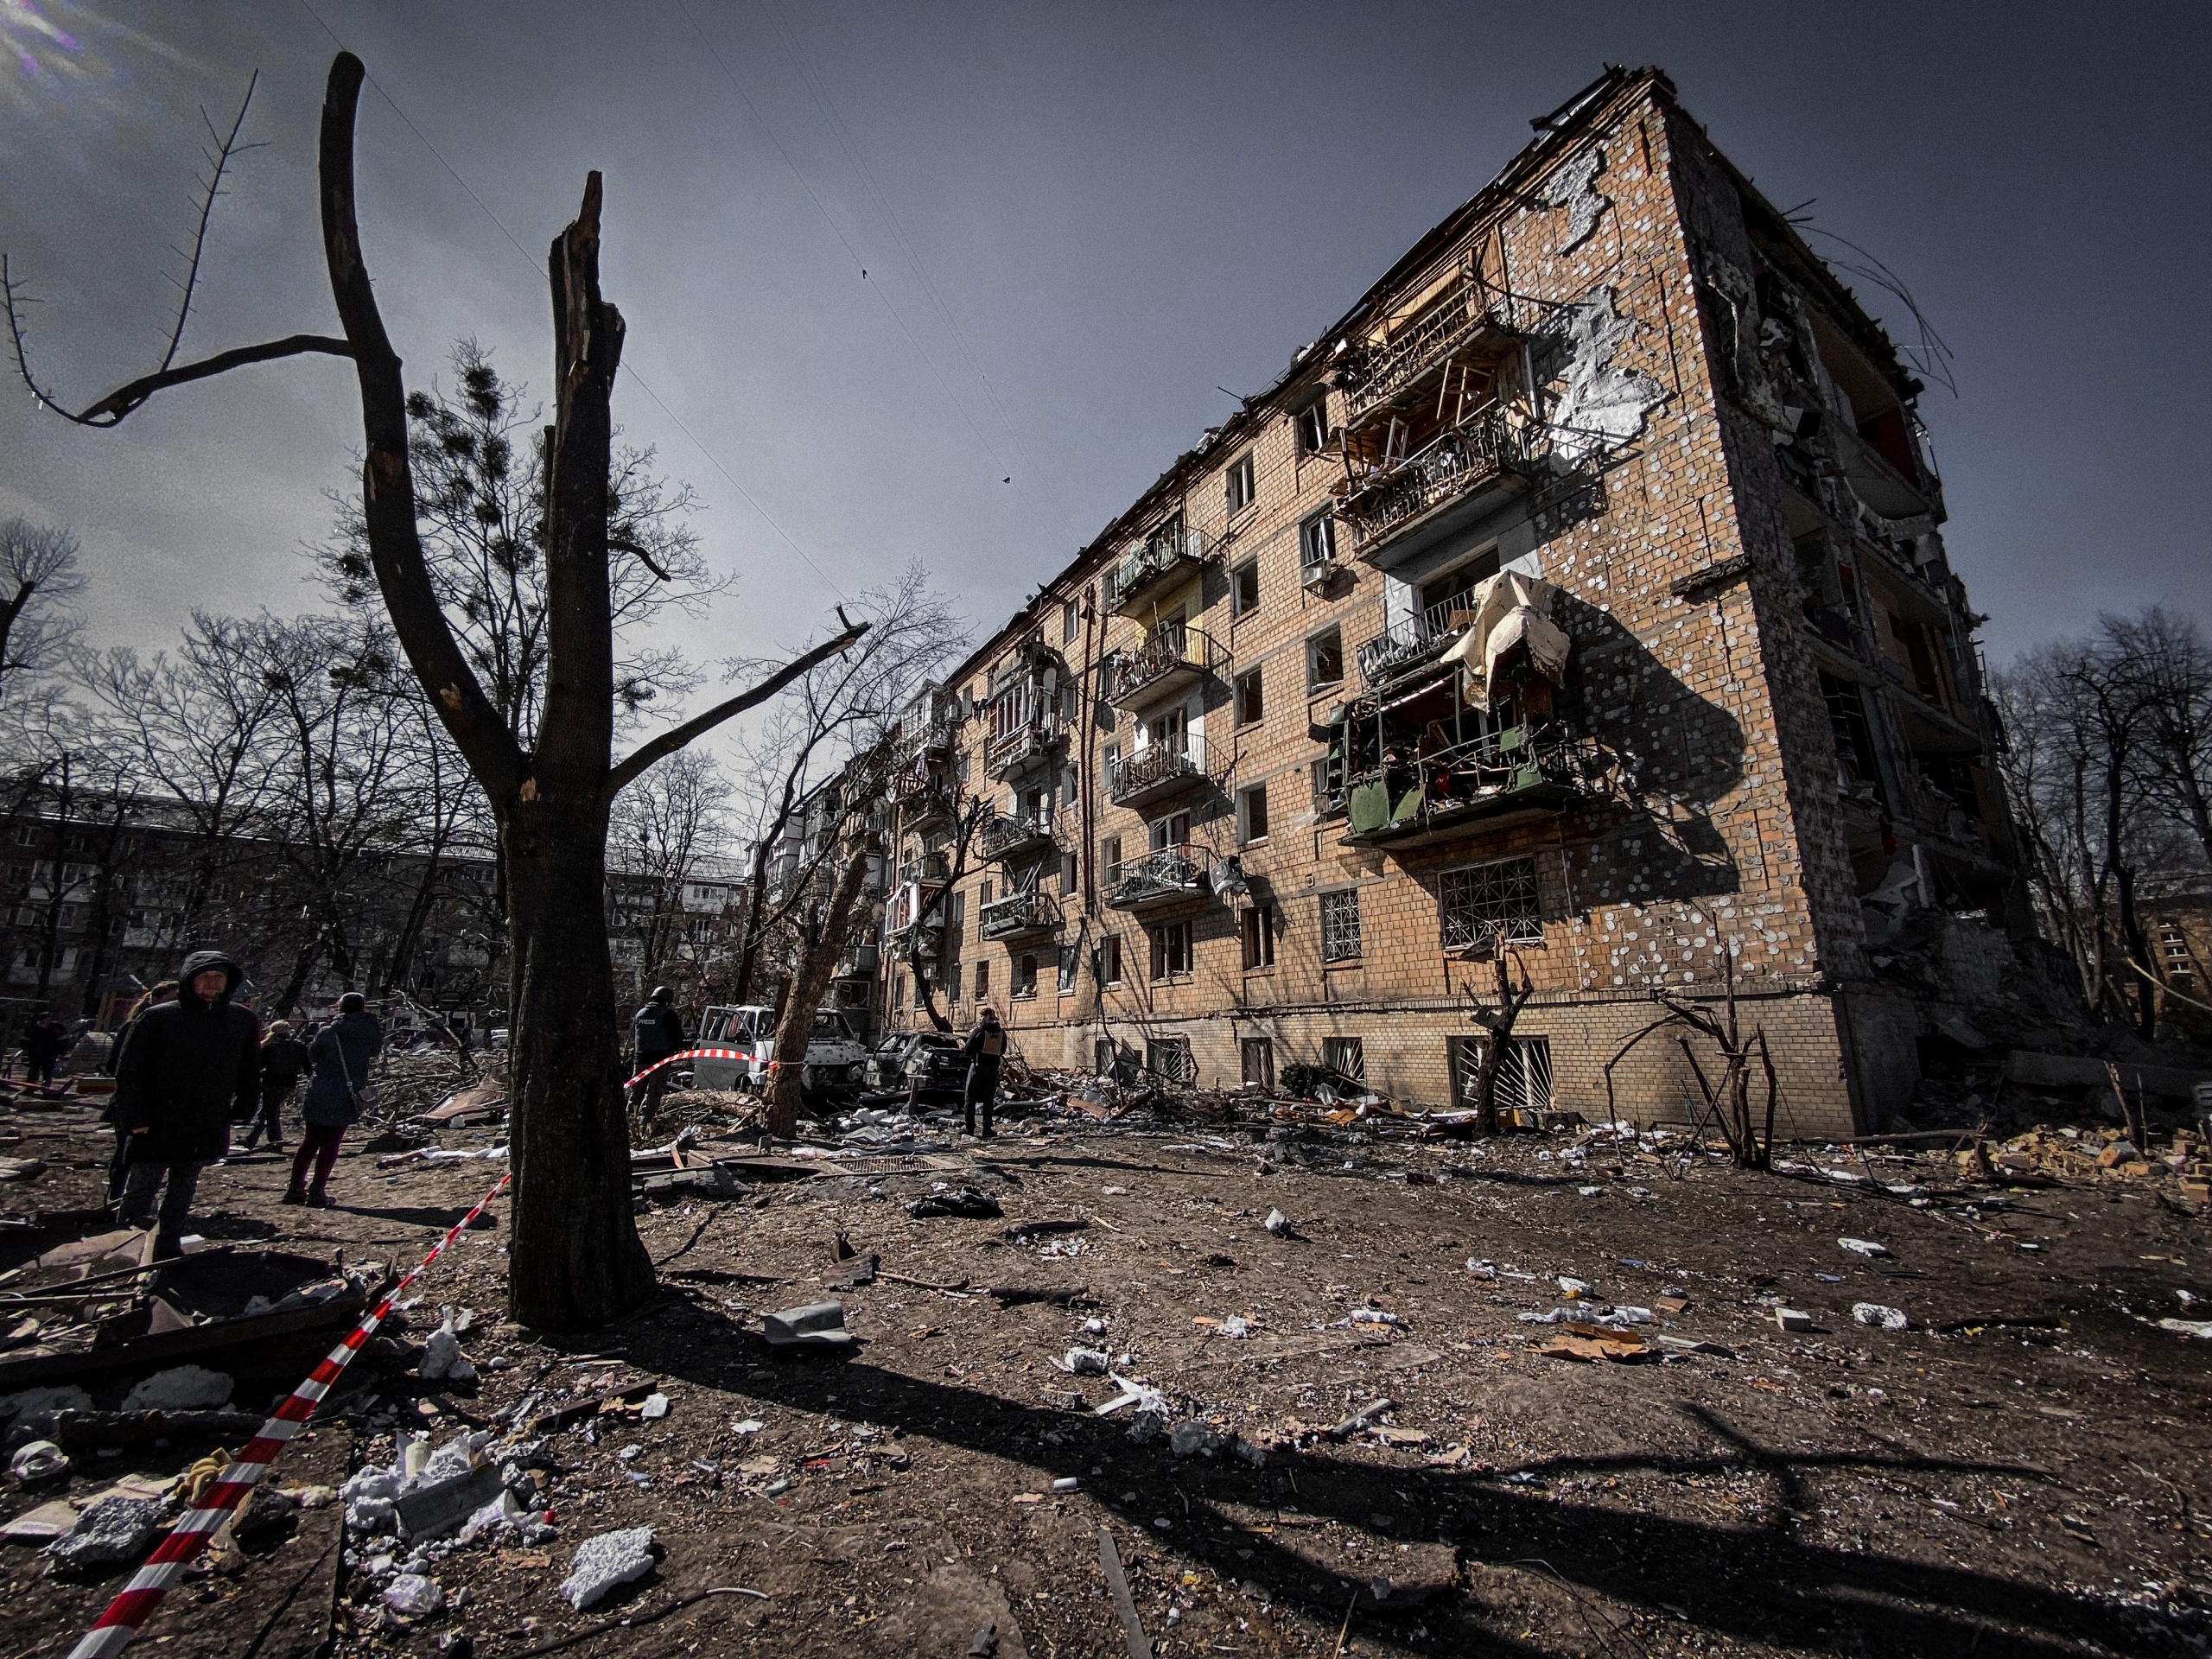 STARO ORUŽJE JE POTROŠENO, SPREMA SE MASOVNA PROIZVODNJA! Rat u Ukrajini usisao je sve vojne zalihe Zapada: Naša skladišta su opasno prazna